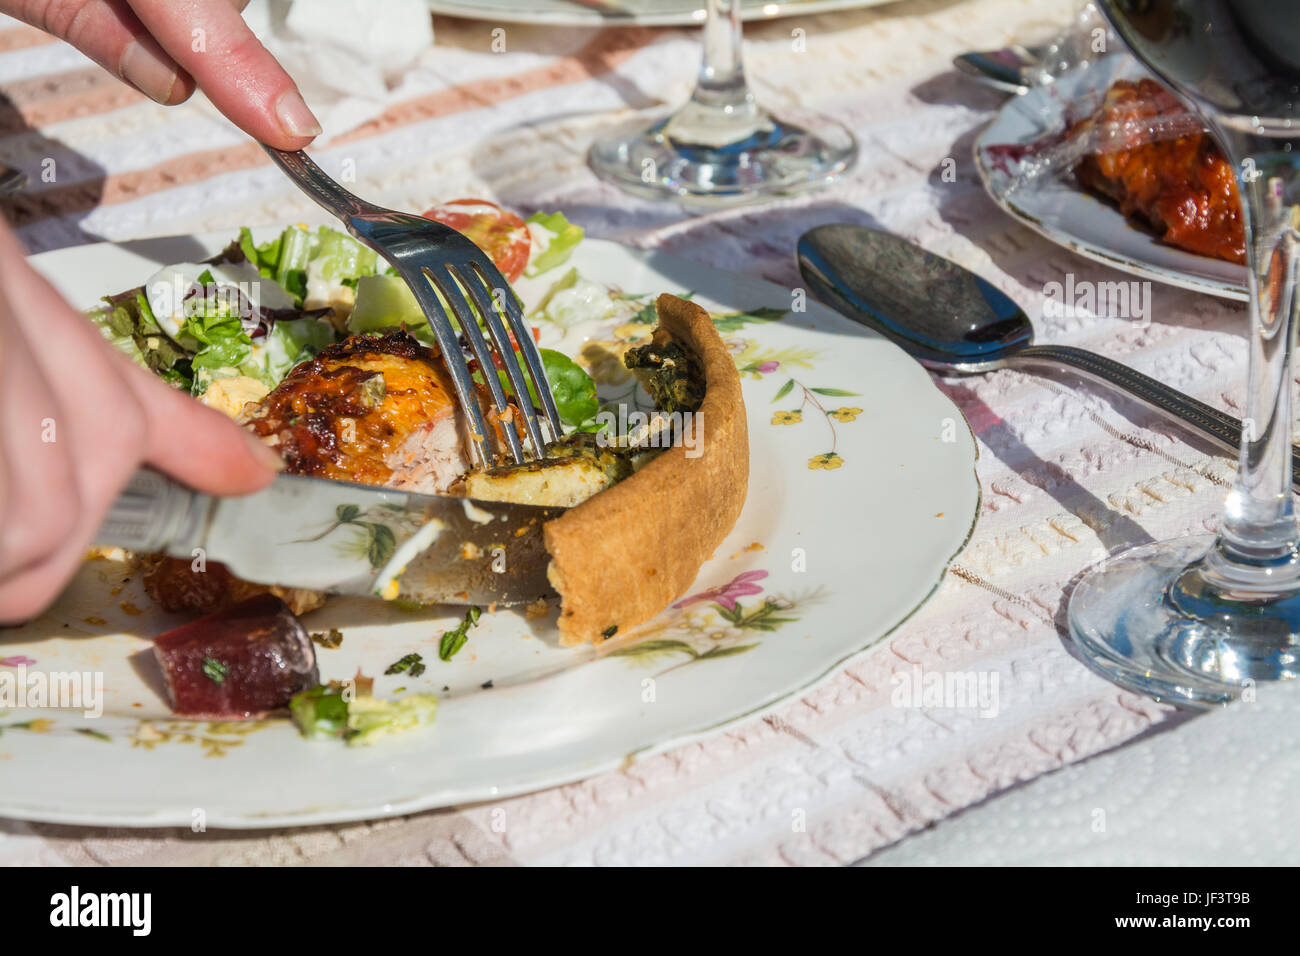 Gros plan de l'alimentation d'été mangées - plein air - sur une assiette. Fourchette et couteau coupe dans une quiche. Les repas à l'extérieur. Le Shropshire, Angleterre Banque D'Images